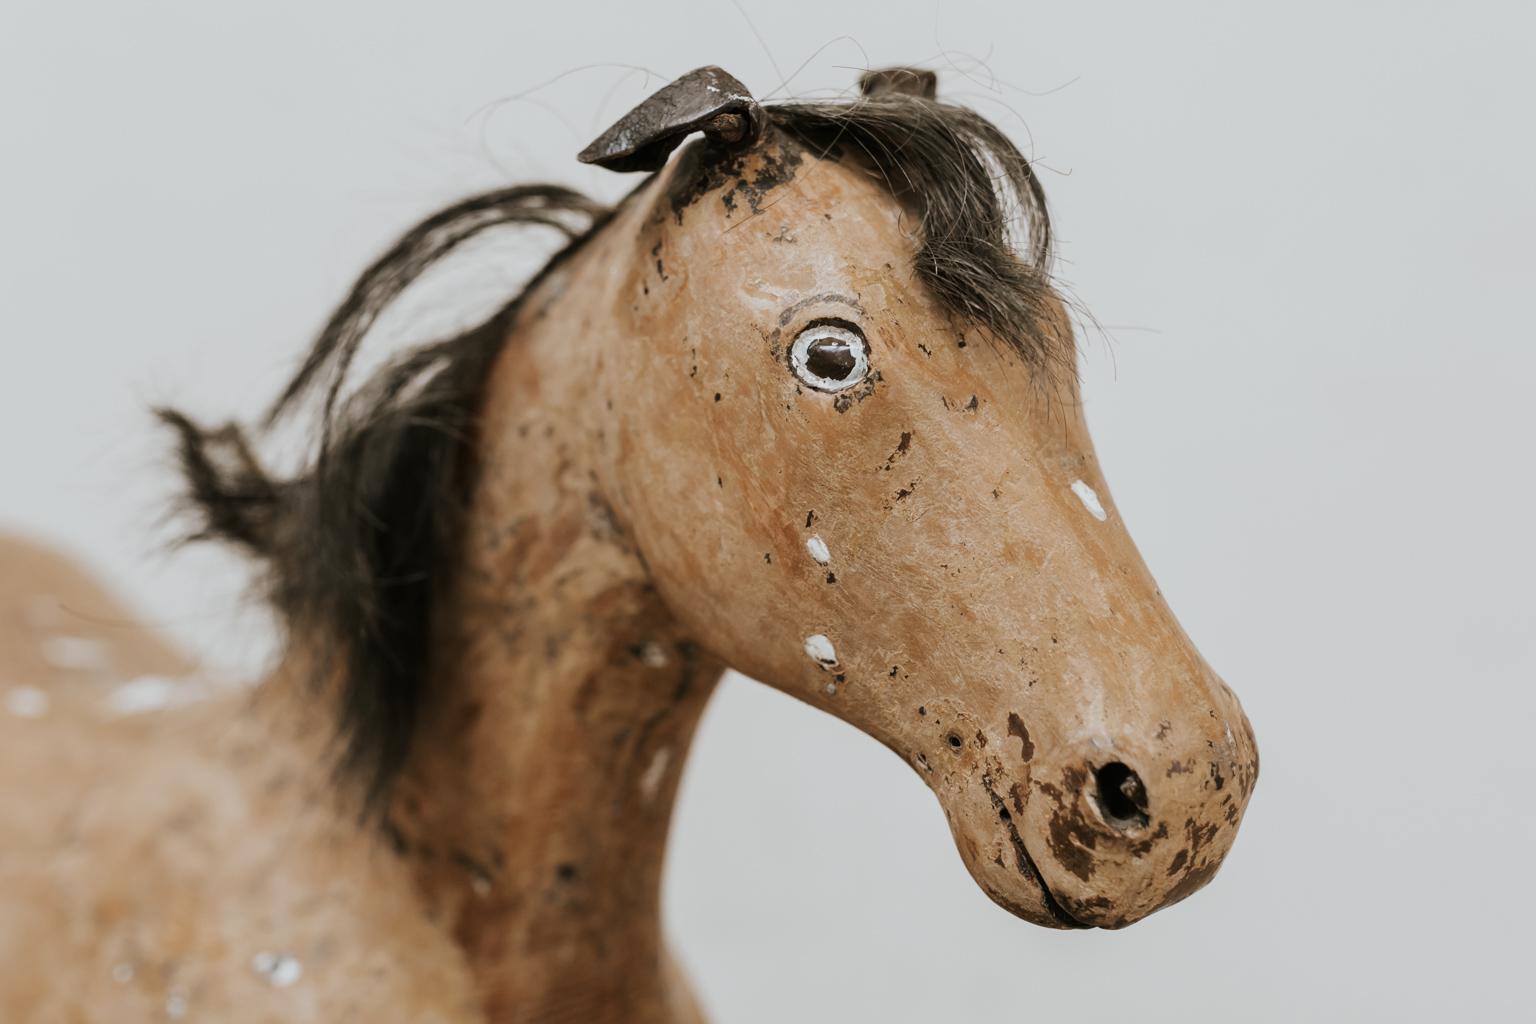 Charmant cheval jouet en bois, toujours un excellent objet de décoration dans une chambre d'enfant.